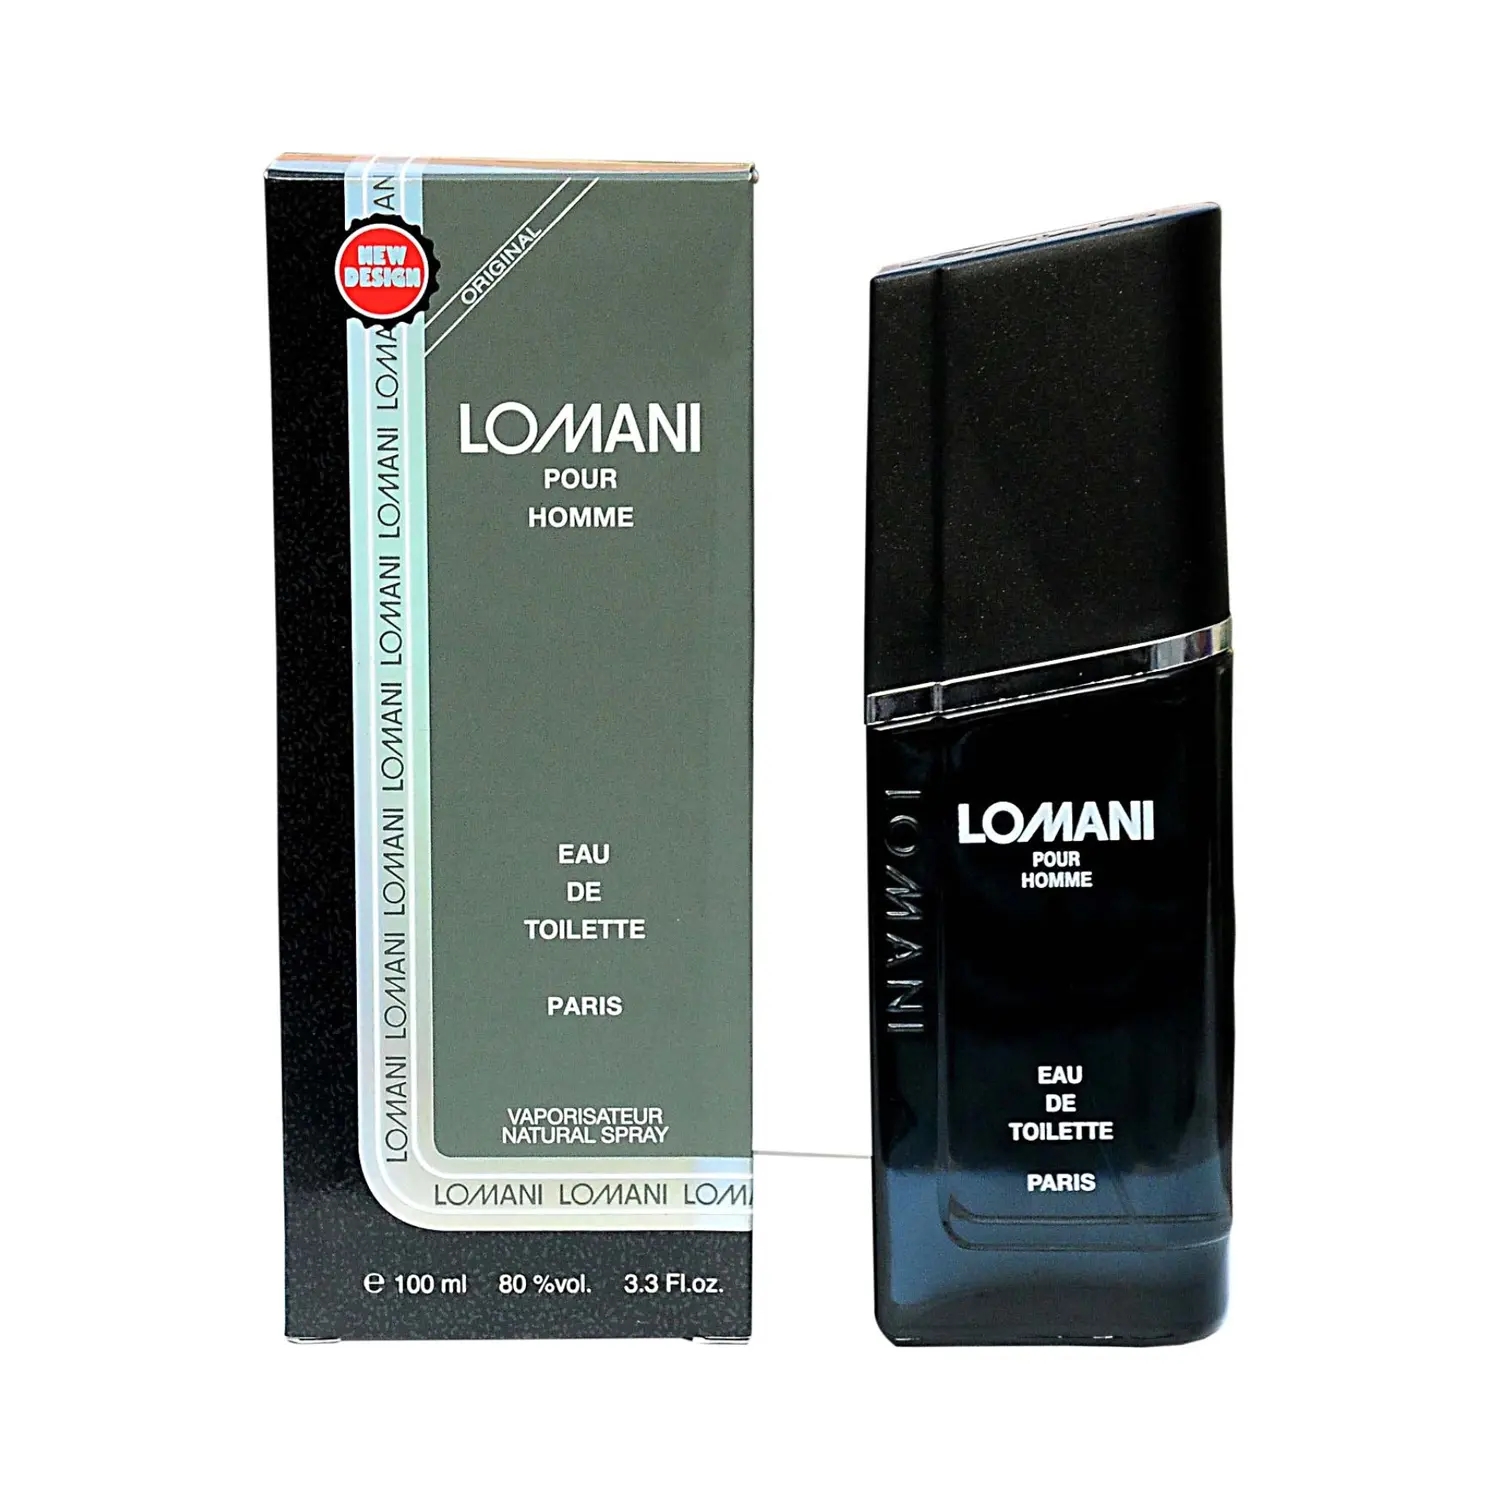 Buy Lomani Pour Homme Eau De Toilette (100ml) Online at Best Price in India